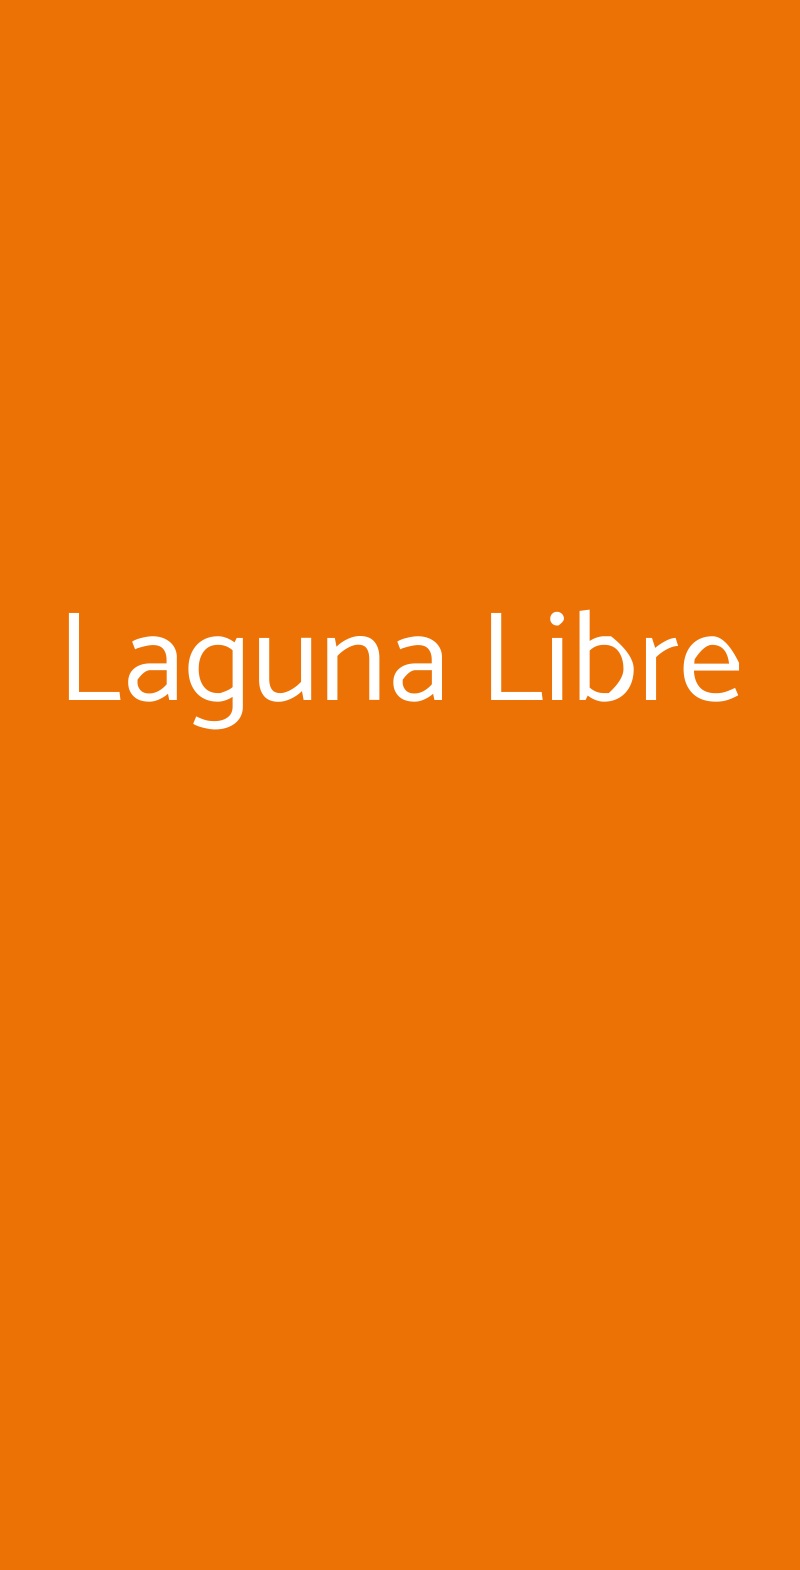 Laguna Libre Venezia menù 1 pagina